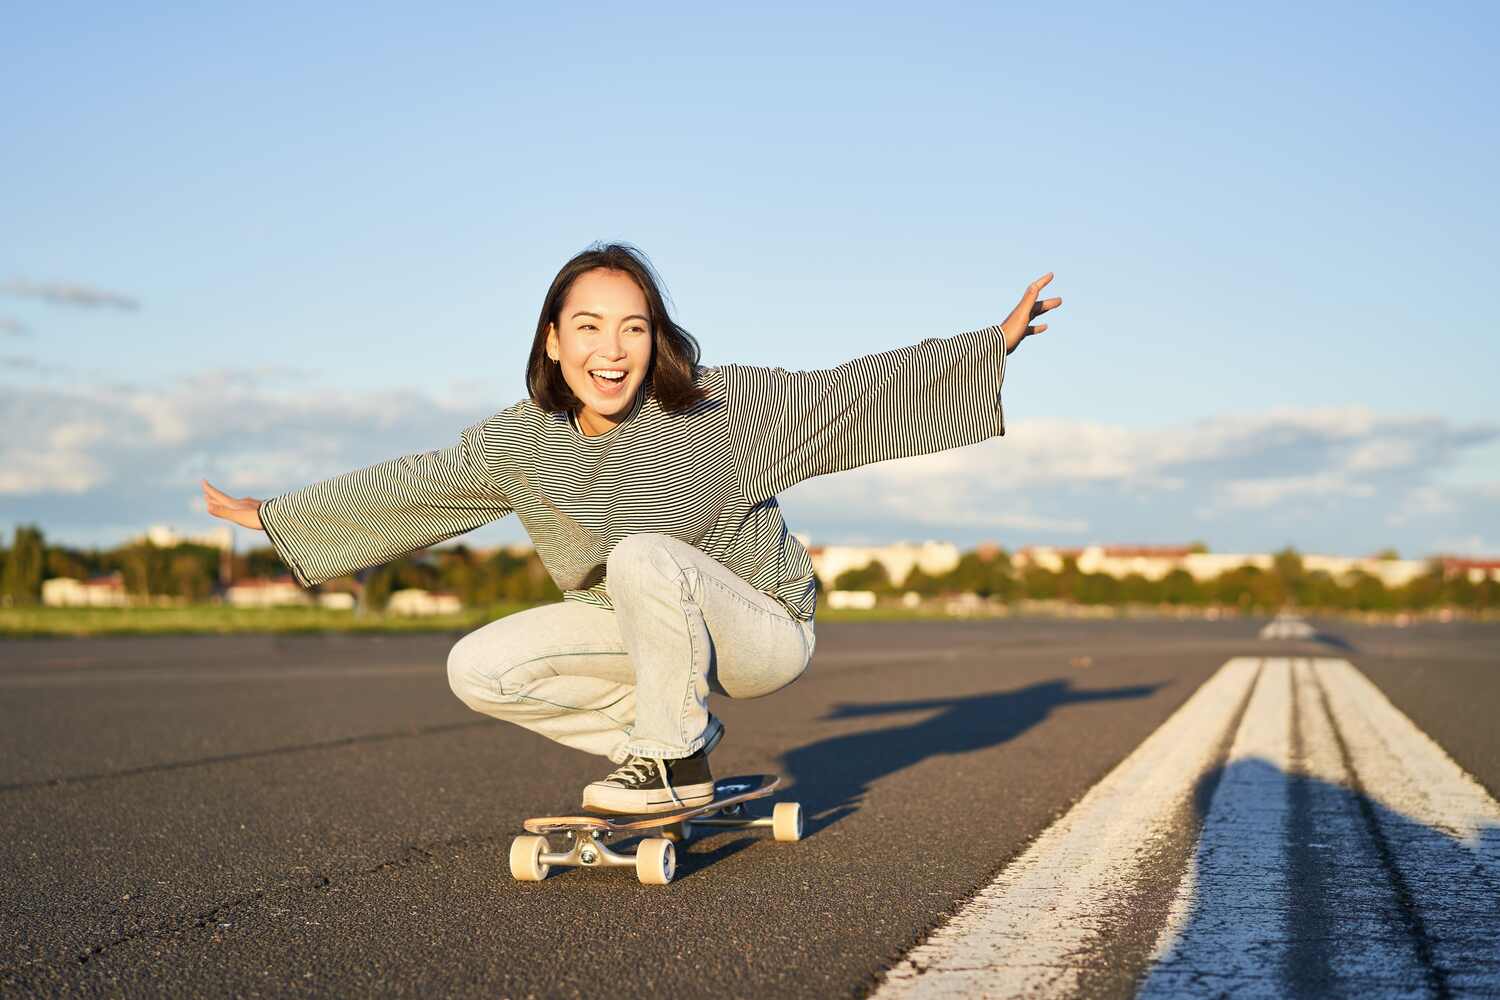 Is skating safe during pregnancy